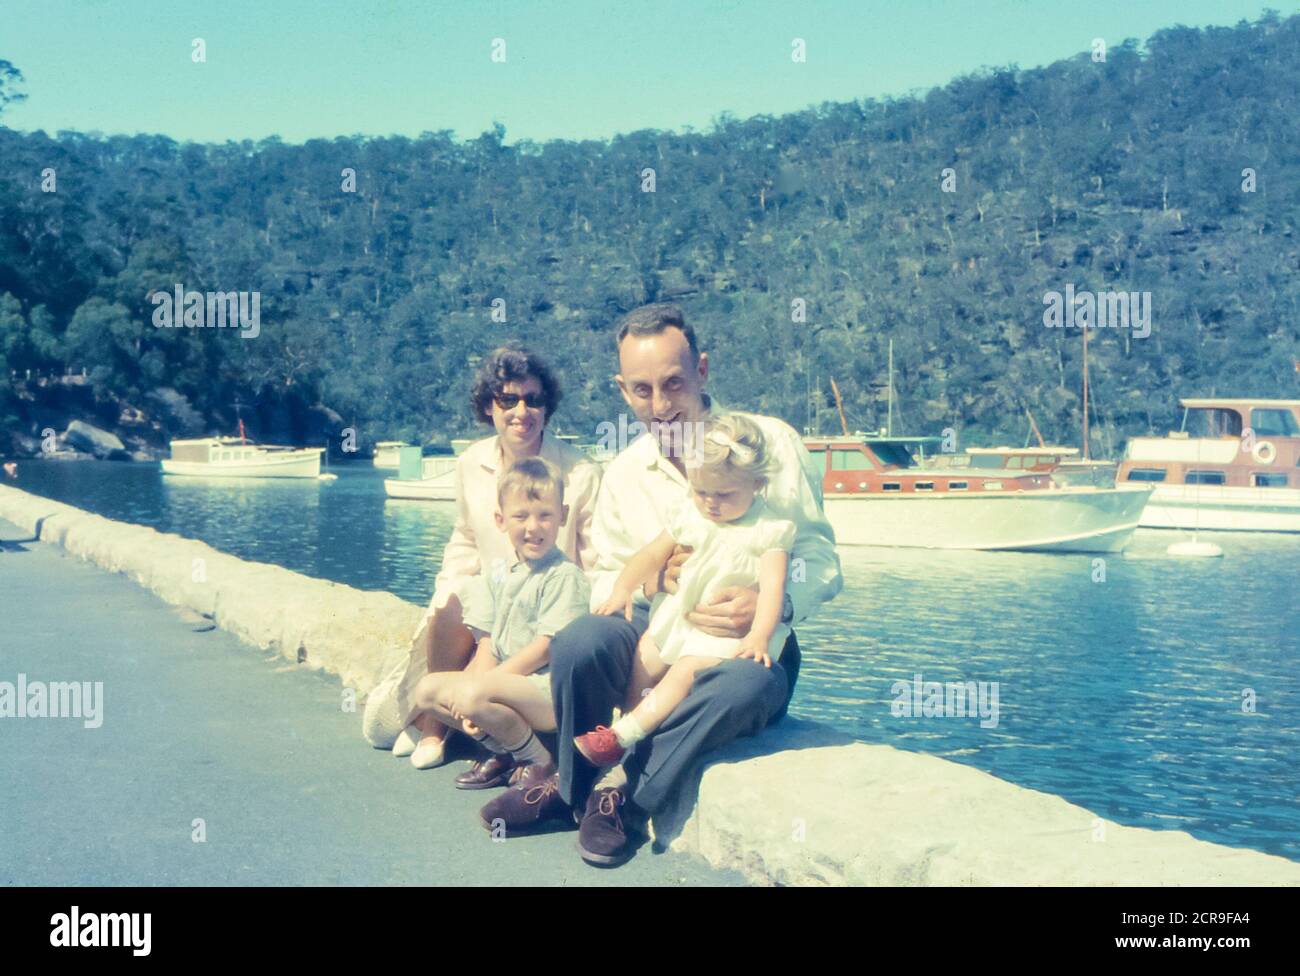 Bombbin Head, Sydney Australie 1965 : avec de beaux bateaux à coque en bois amarrés en arrière-plan, une jeune famille australienne pose pour une photo au bord de l'eau à Bobbin Head, dans le parc national de Kurant-Gai, Sydney, Australie Banque D'Images